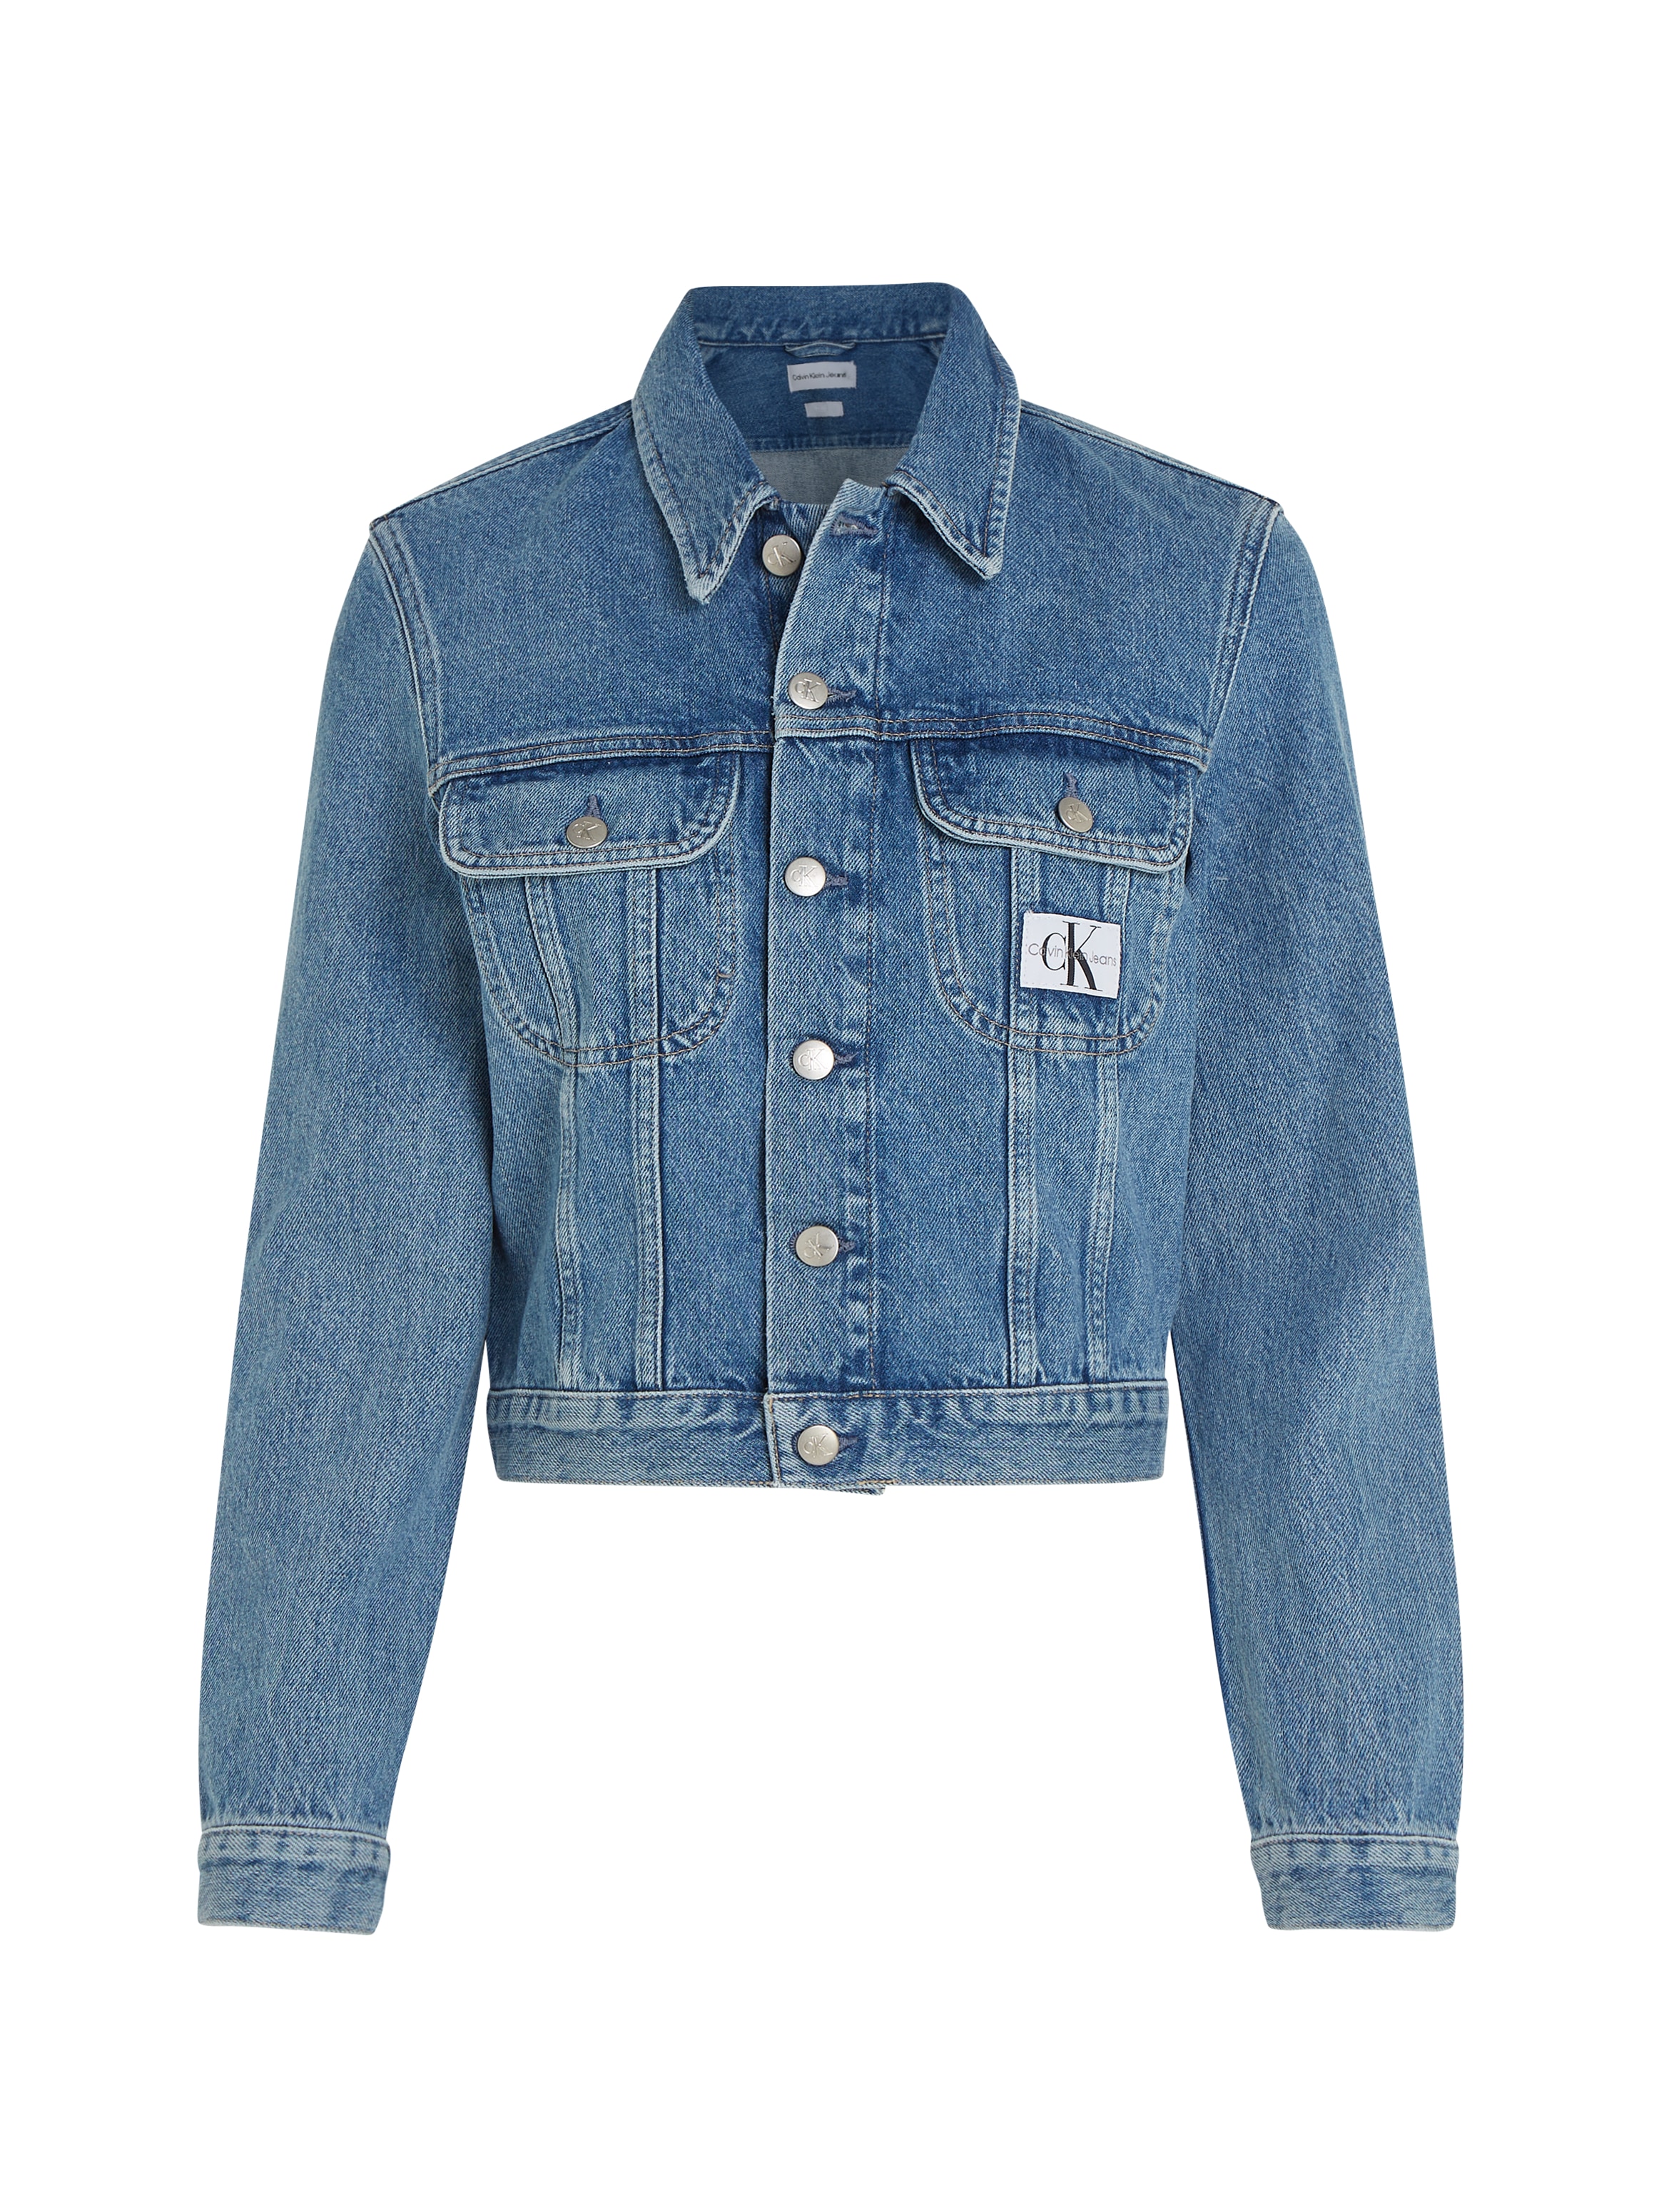 »CROPPED Klein OTTO Jeans JACKET« bestellen Jeansjacke DENIM 90S bei Calvin